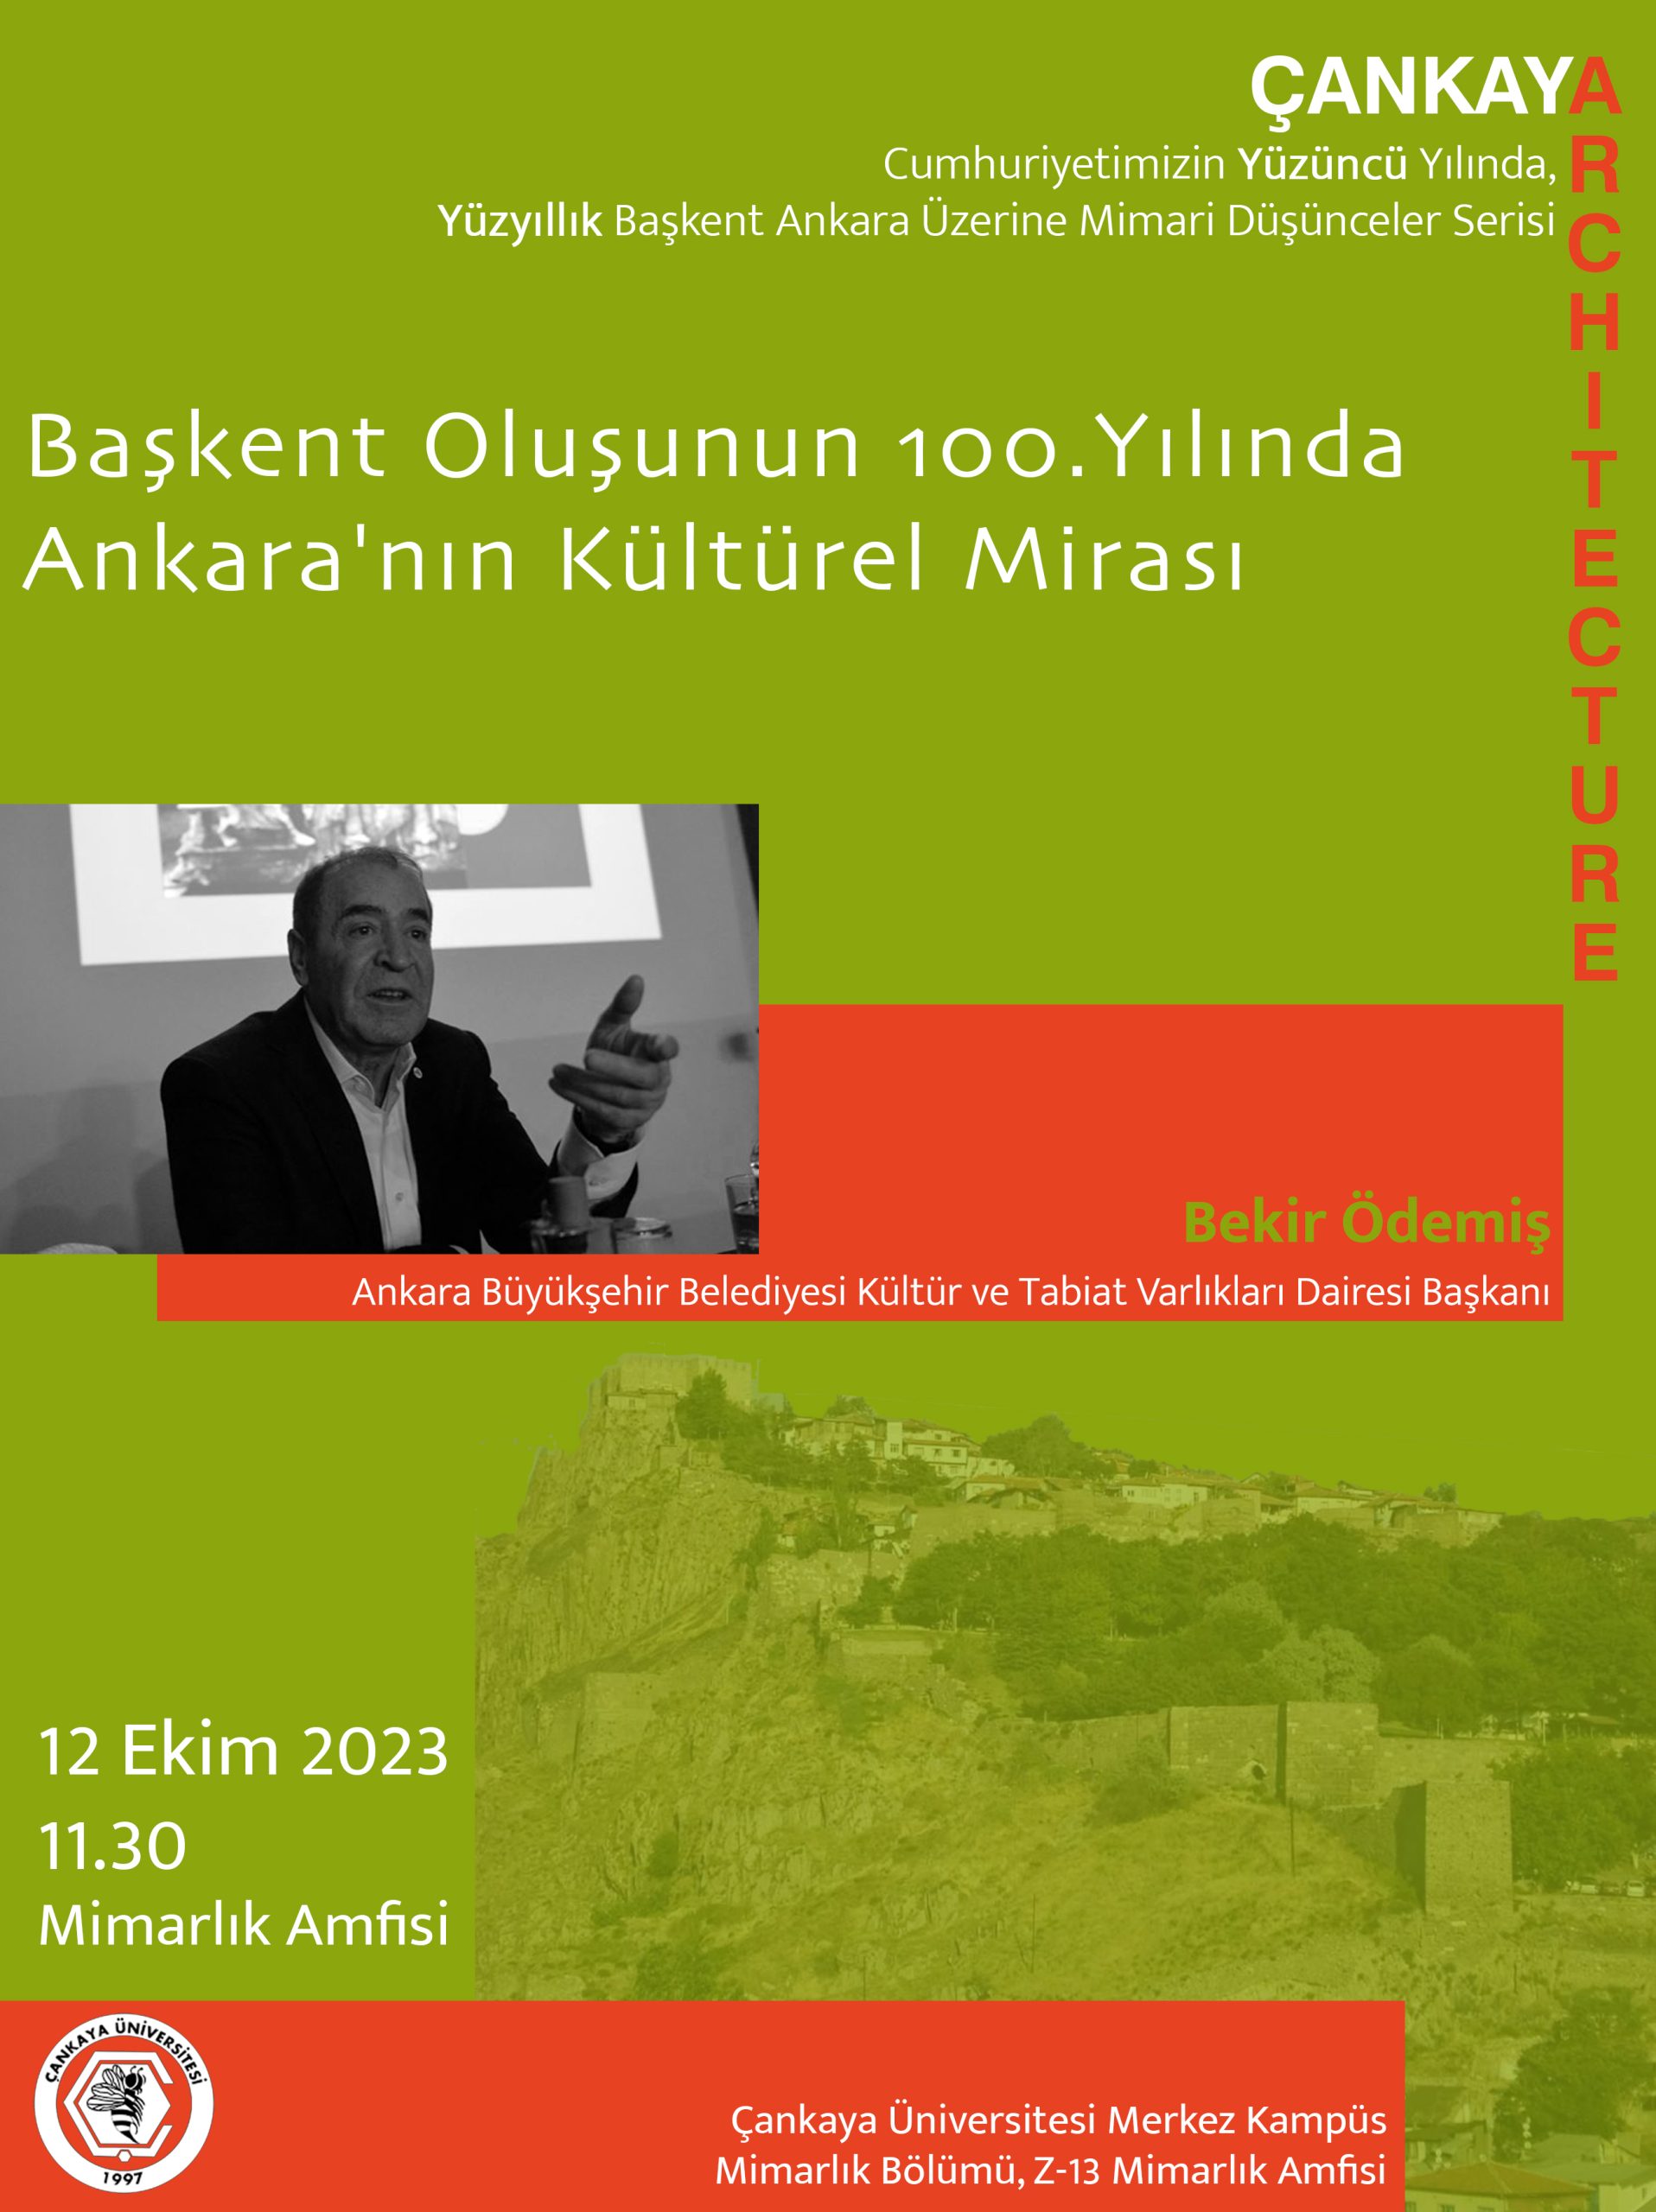 Başkent Oluşunun 100. Yılında Ankara’nın Kültürel Mirası – Bekir Ödemiş